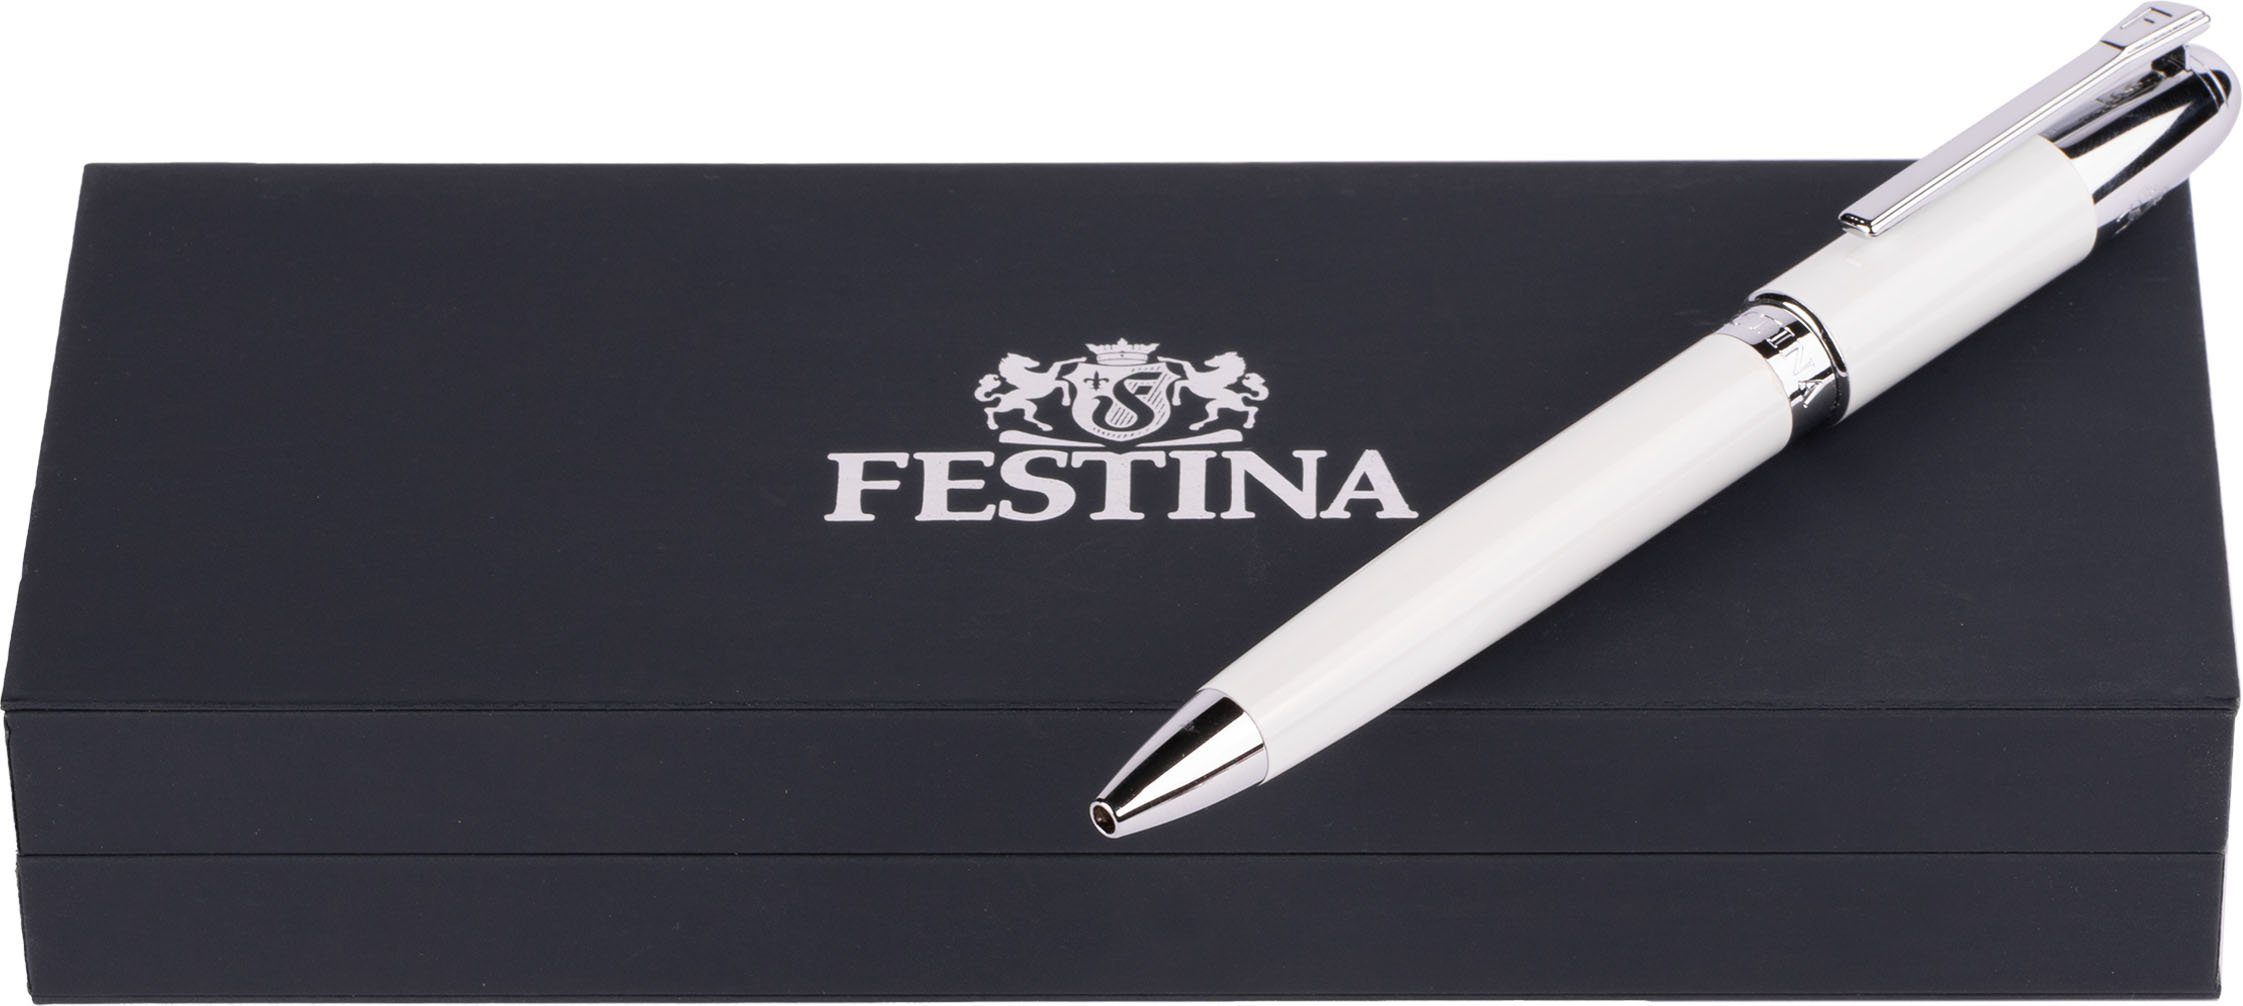 Festina Kugelschreiber Classicals, FWS4110/F, inklusive Geschenk auch als Etui, ideal